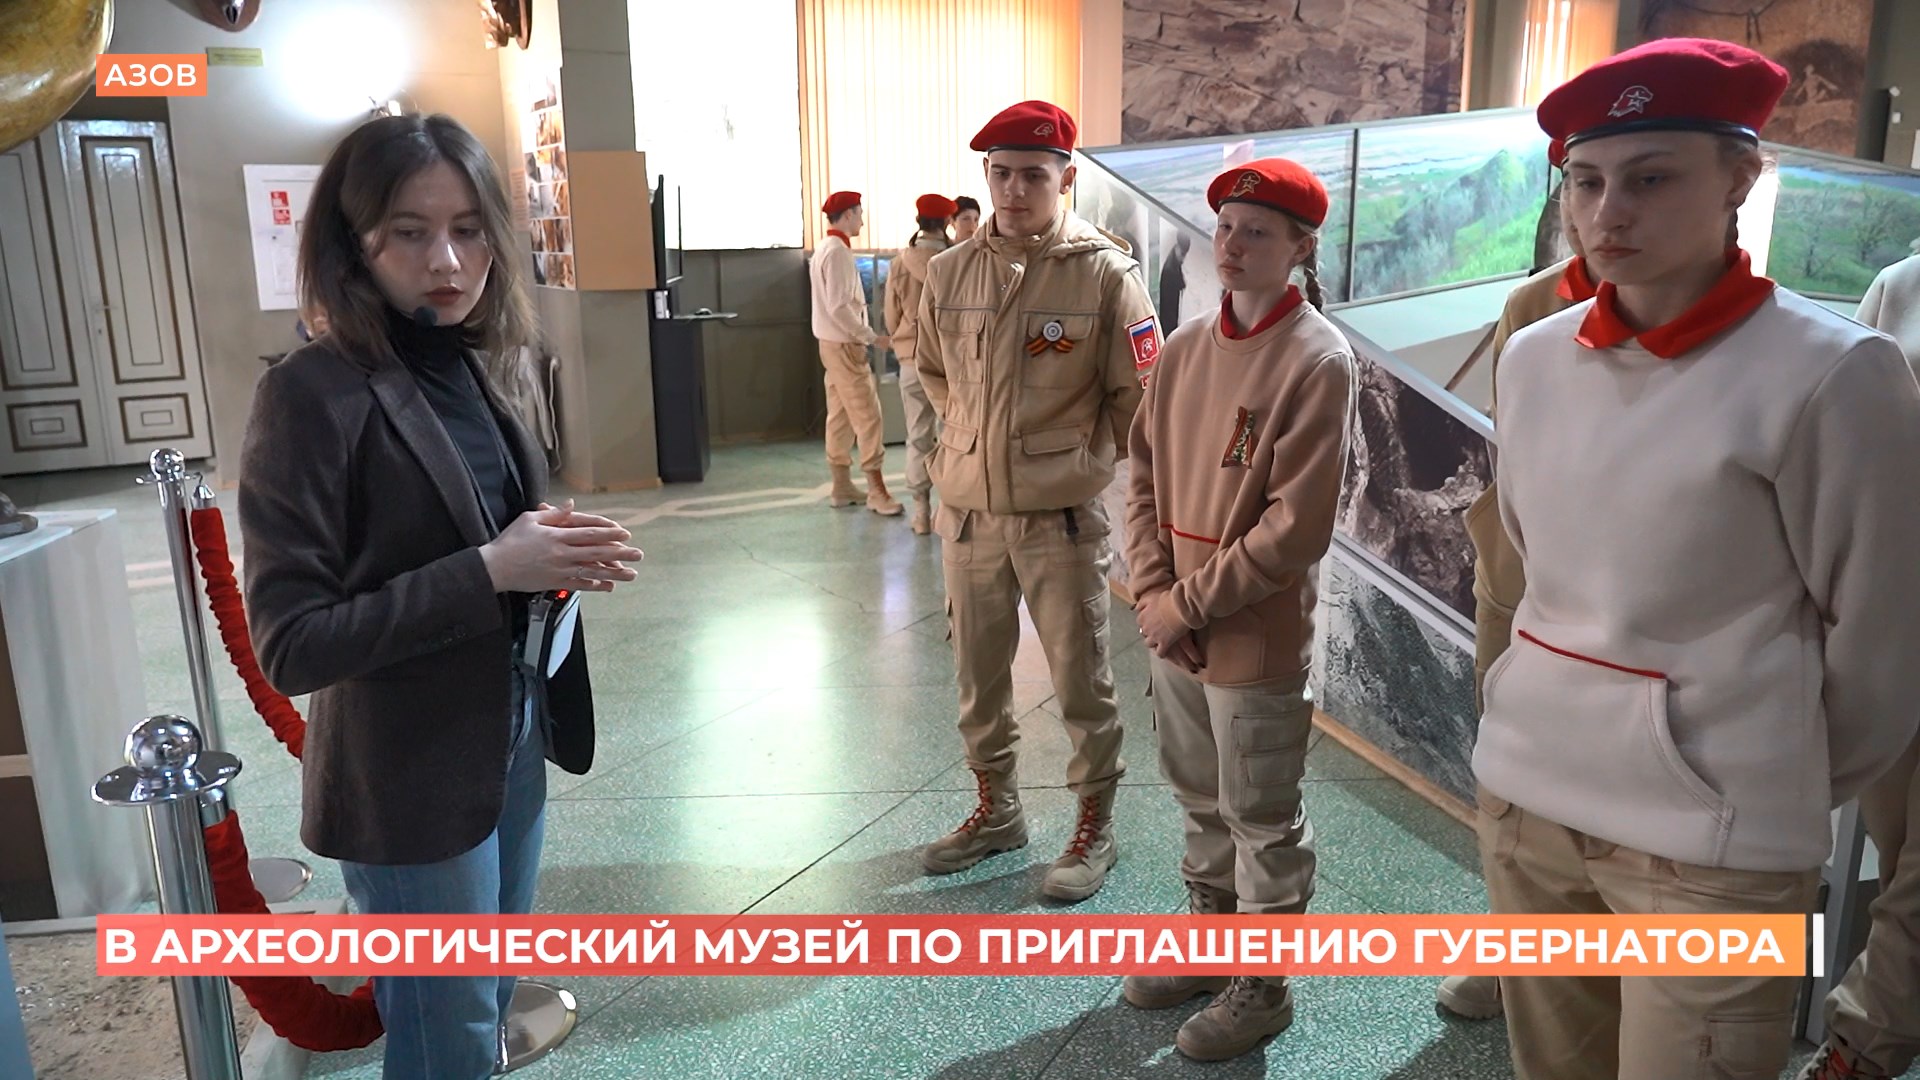 Юнармейцы из Песчанокопского района посетили Азовский музей по приглашению губернатора